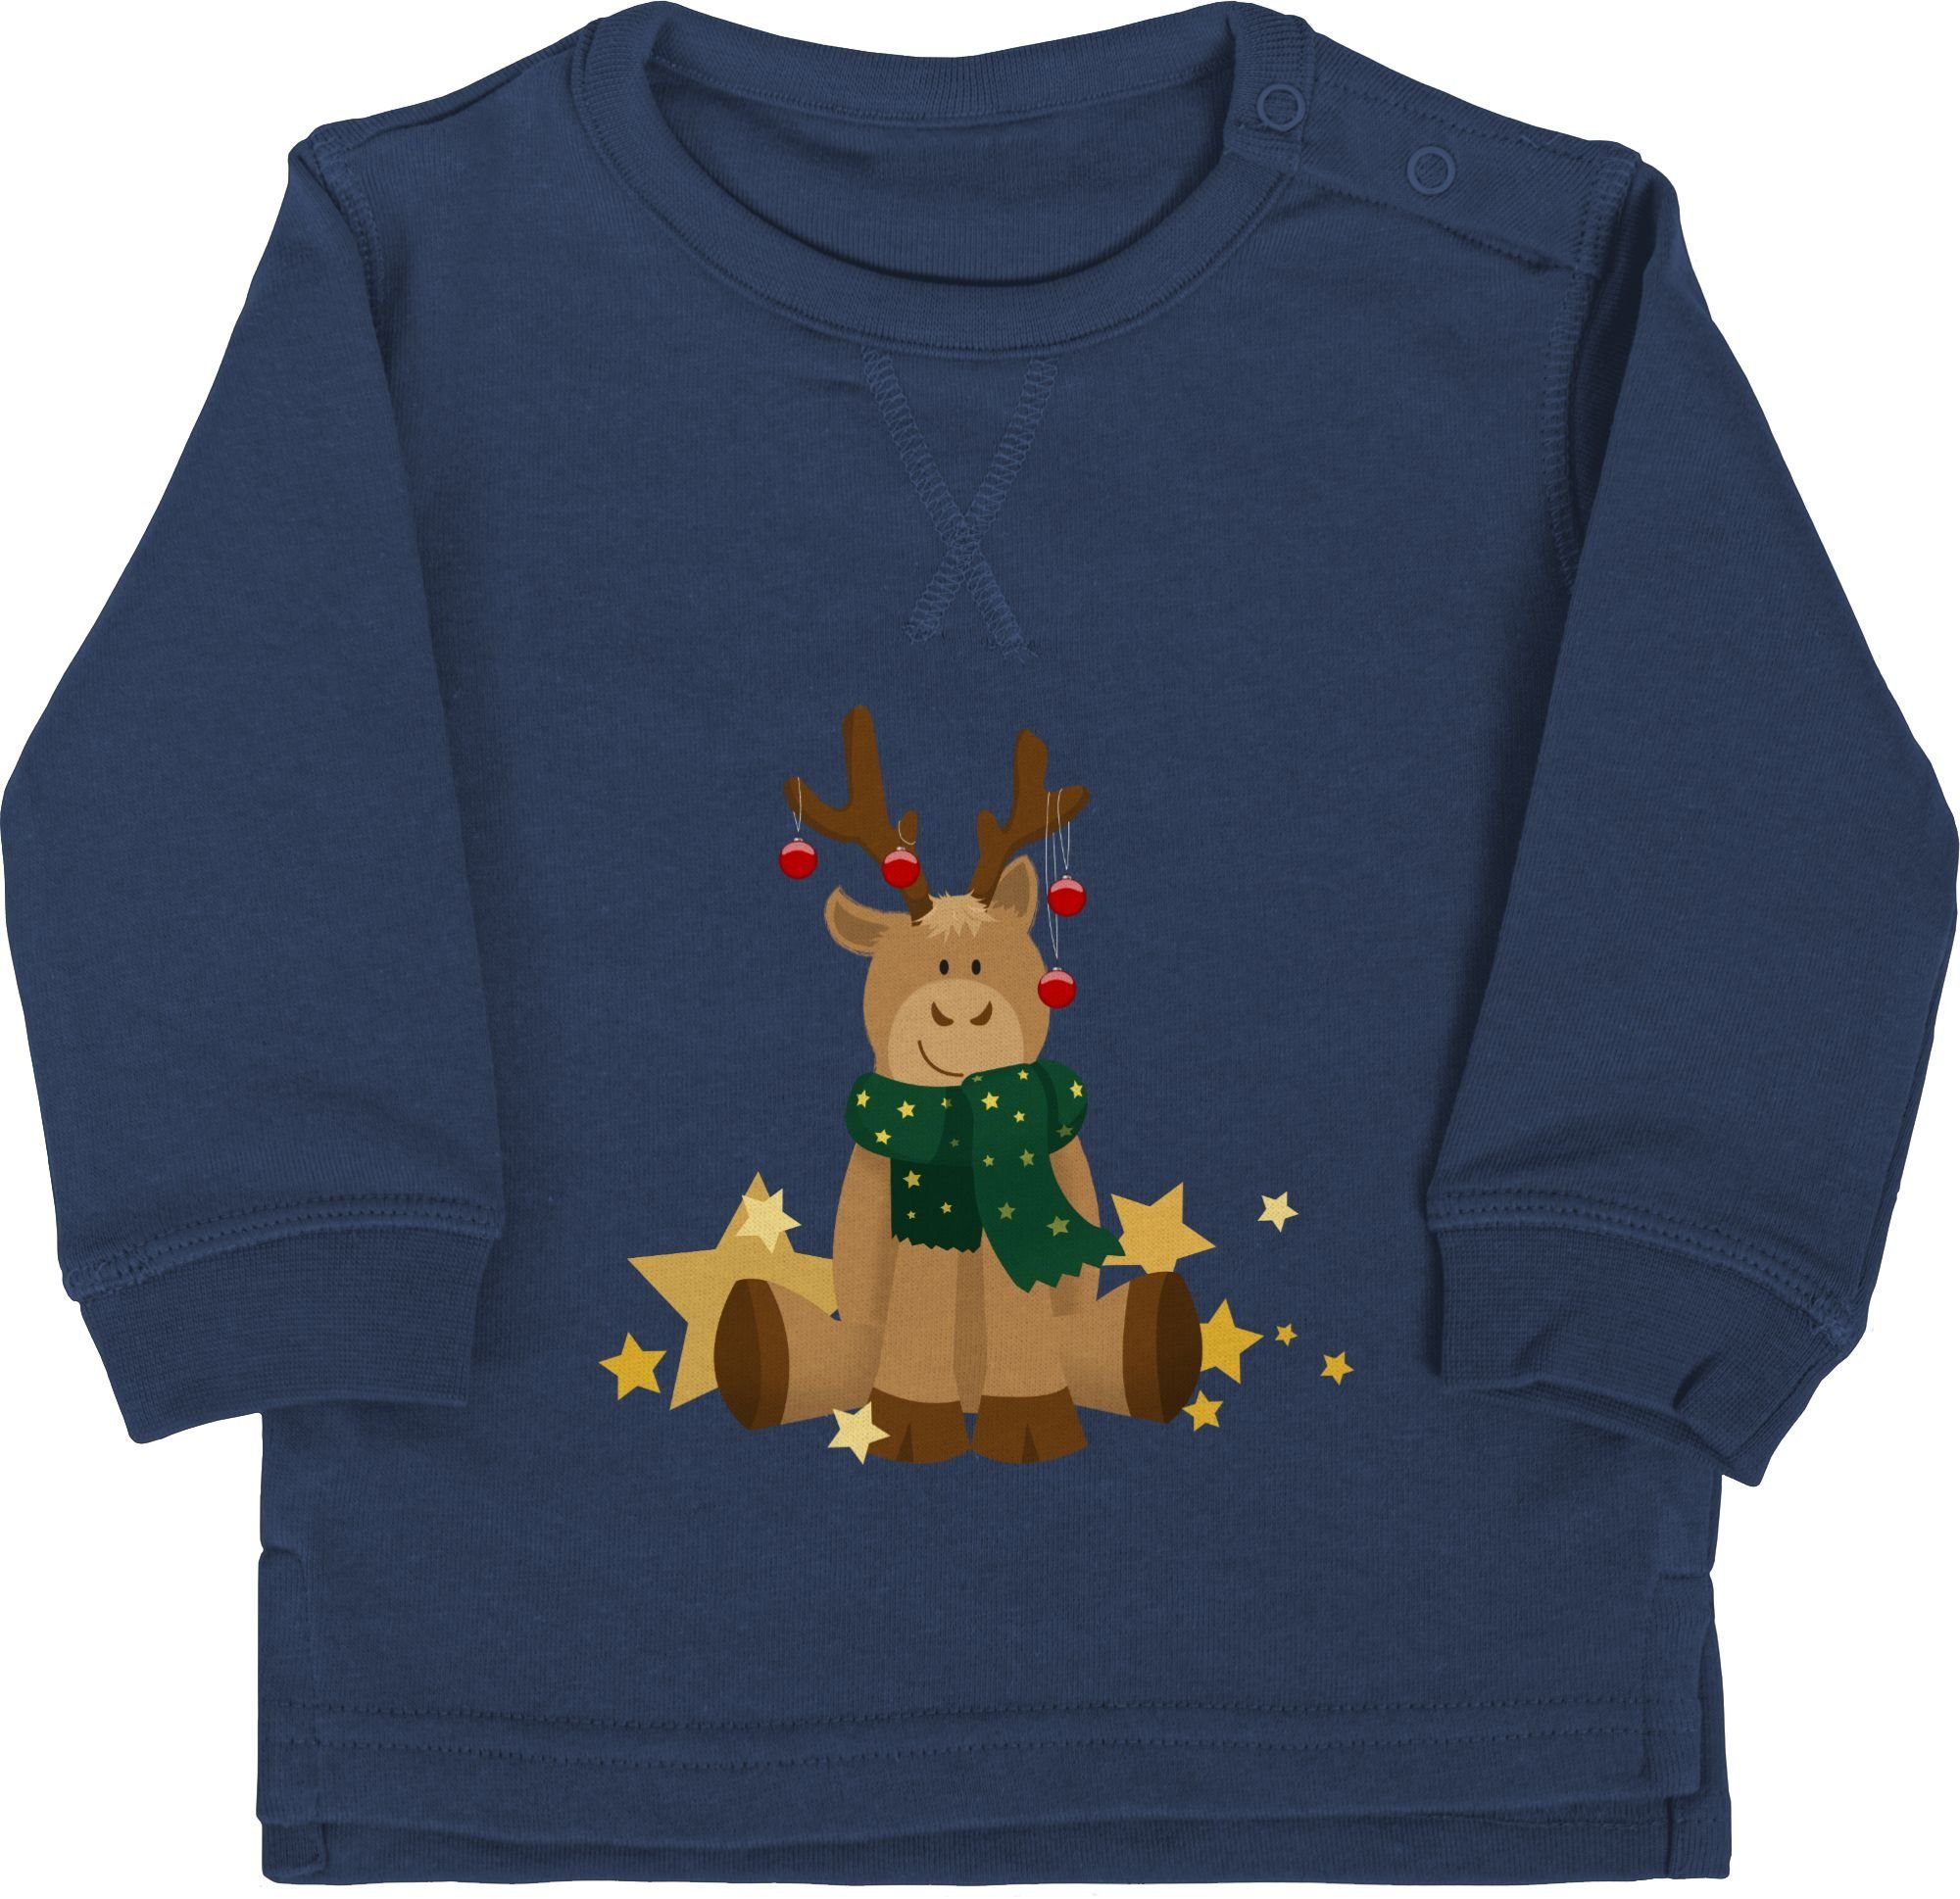 Shirtracer Sweatshirt süßer Elch - Weihnachten Kleidung Baby - Baby Pullover  weihnachtspulli baby junge - weihnachtpullor - elch pulli